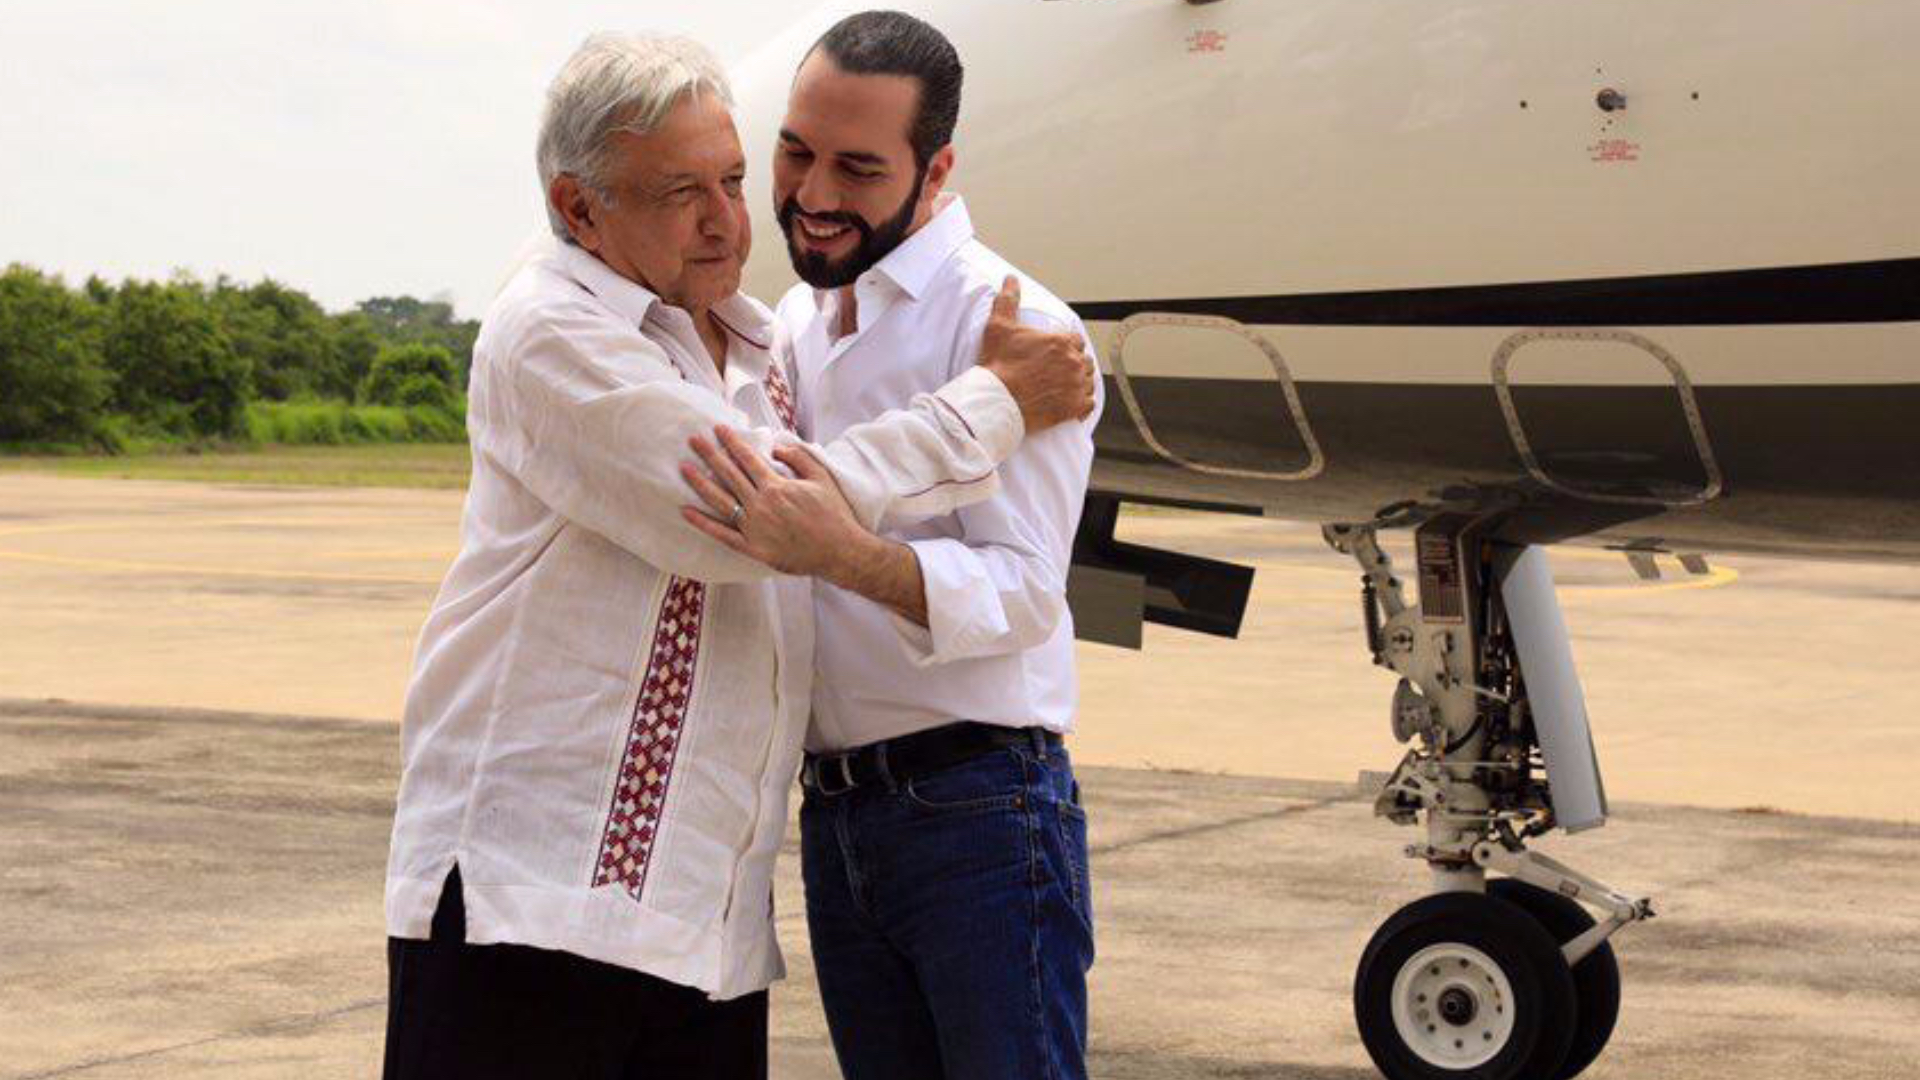 AMLO y Bukele en la visita del salvadoreño a México en 2019.
(Foto: Presidencia de México)